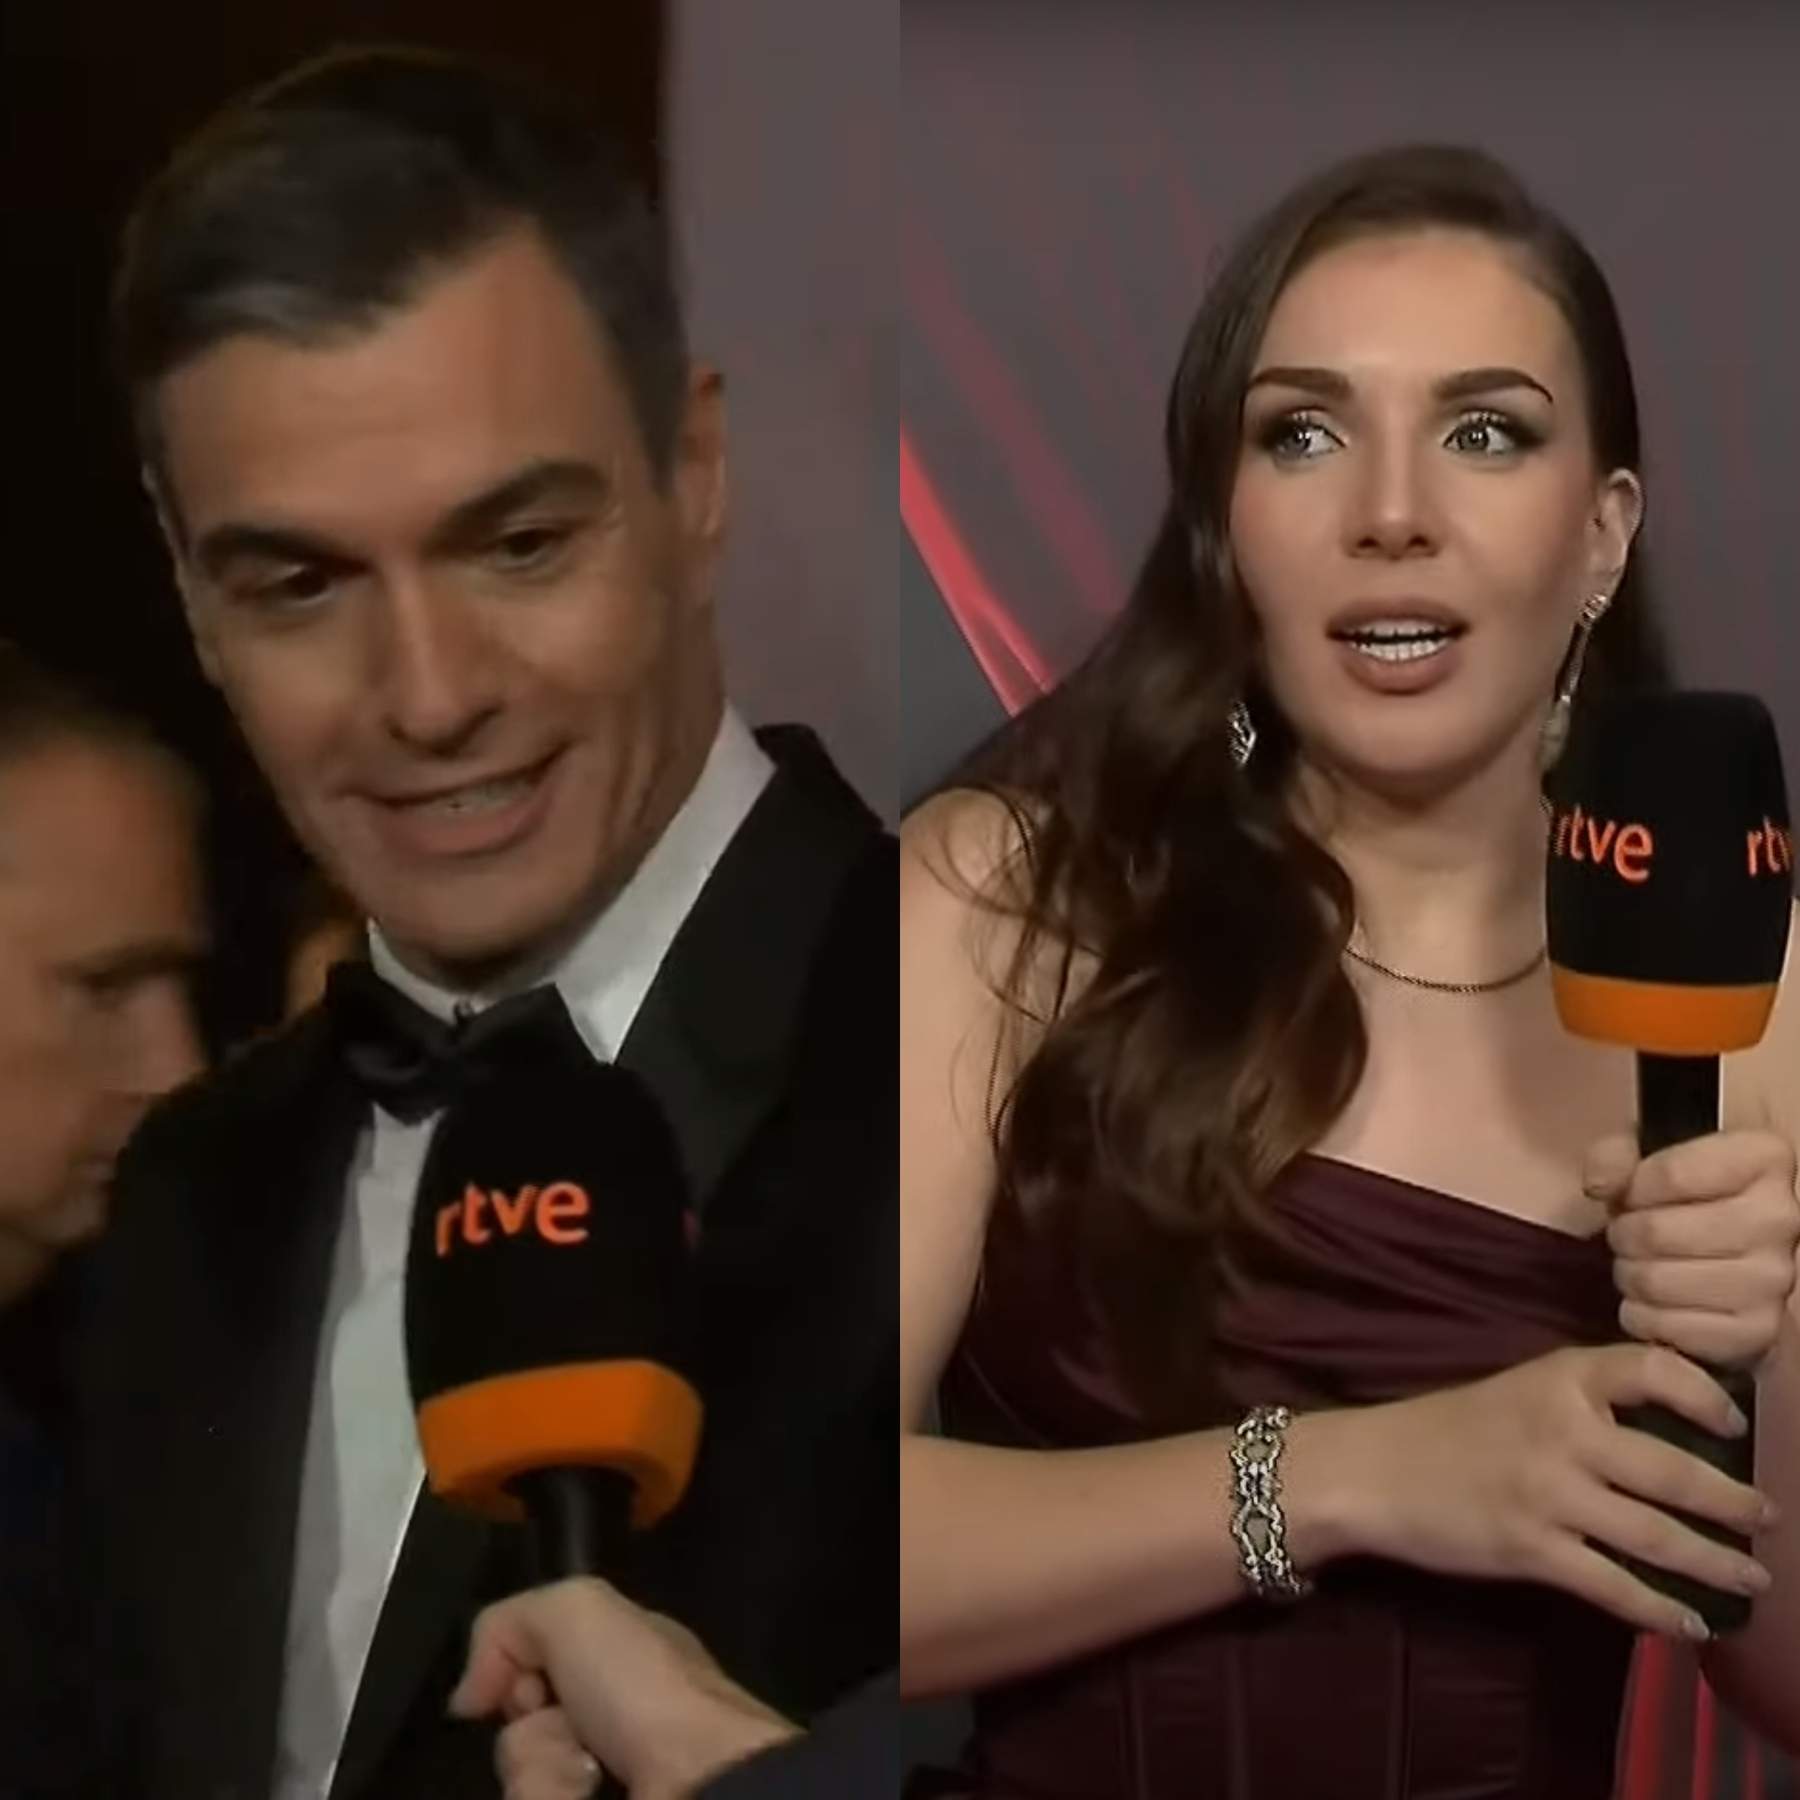 Pedro Sánchez es mulla, defensa Inés Hernand davant de RTVE: "El icono eres tú"